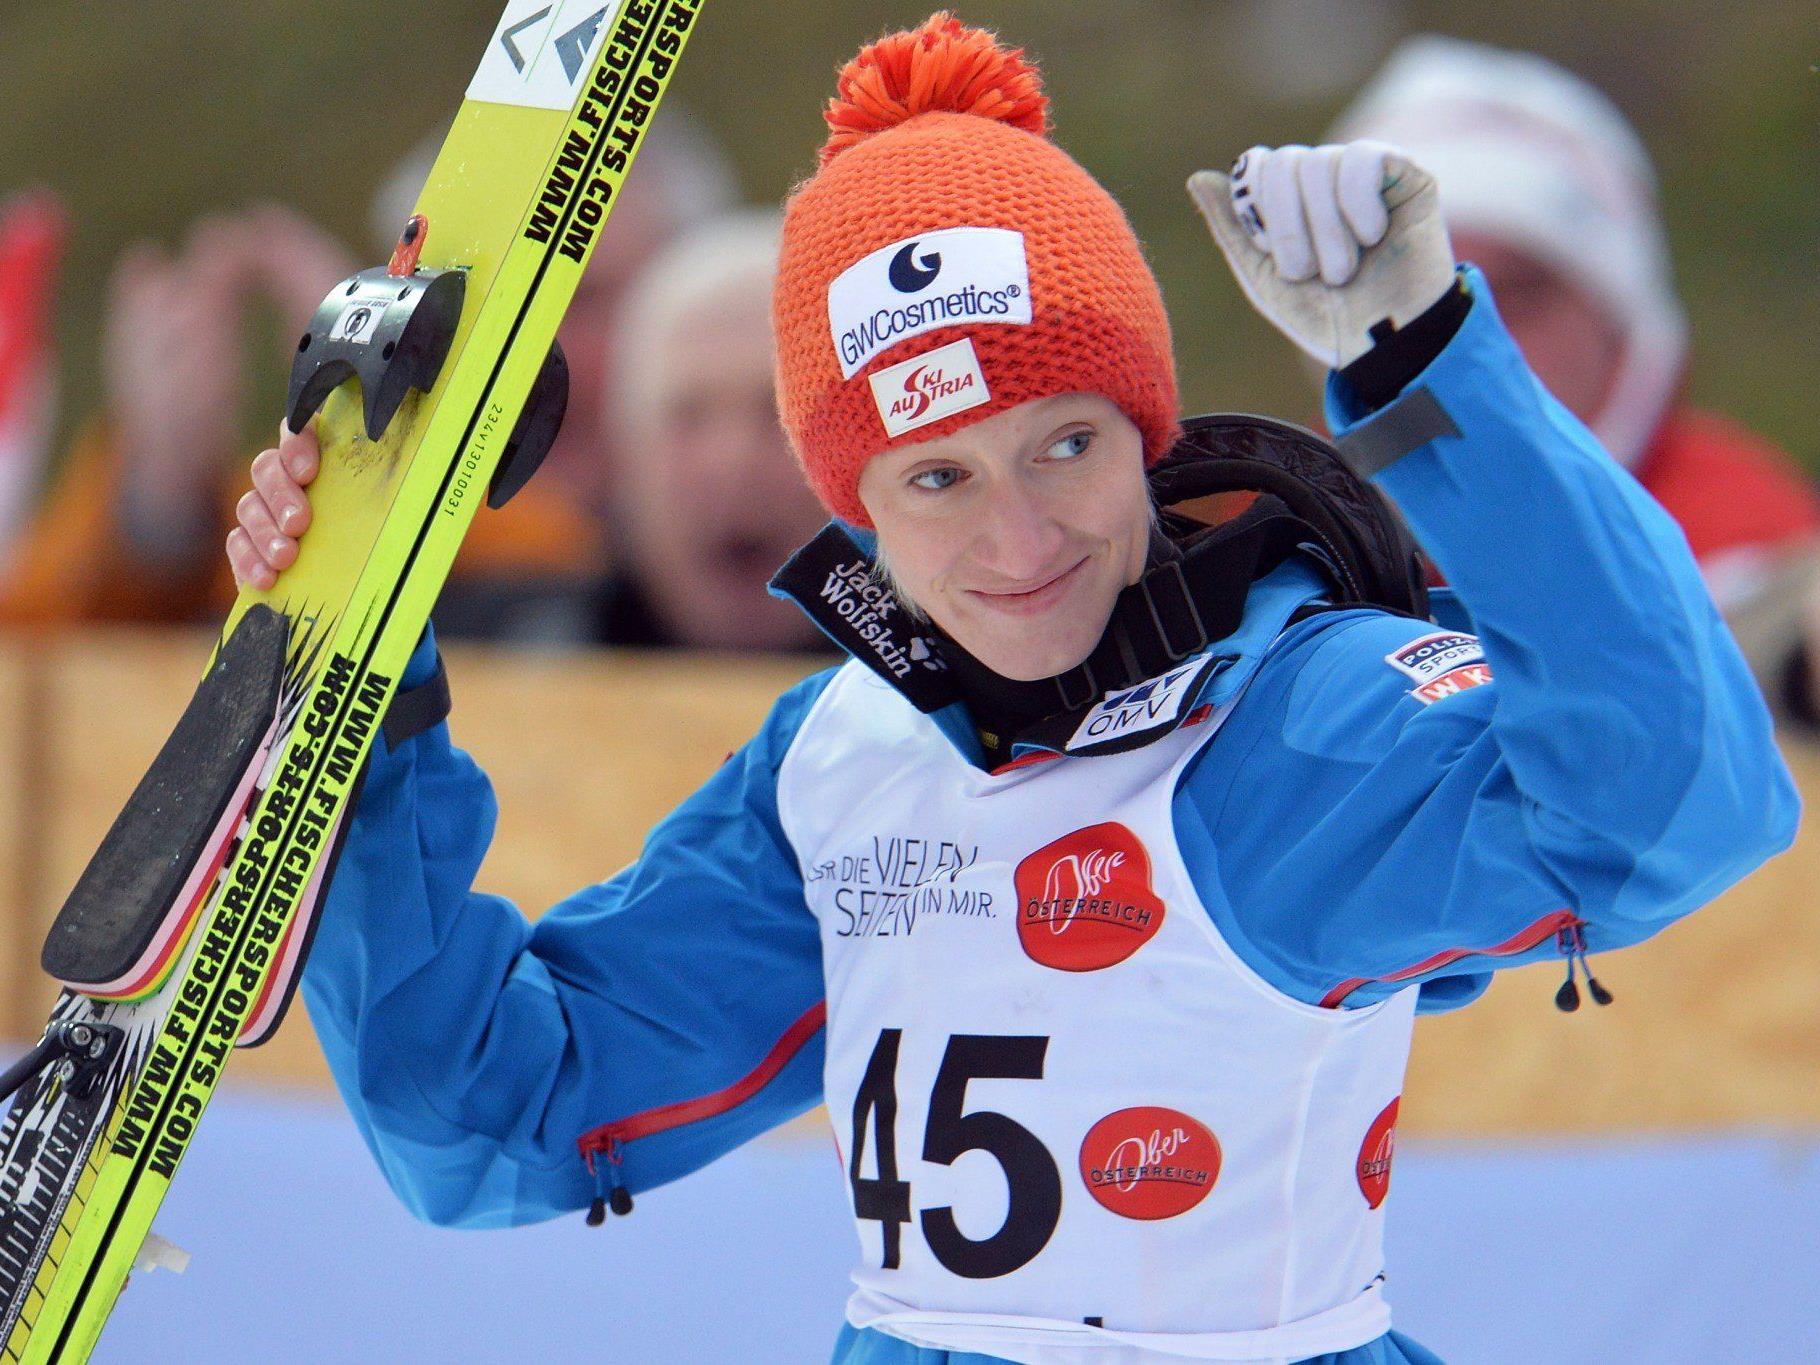 Skispringerin Daniela Iraschko-Stolz bekennt sich offen zu einer gleichgeschlechtlichen Beziehung.